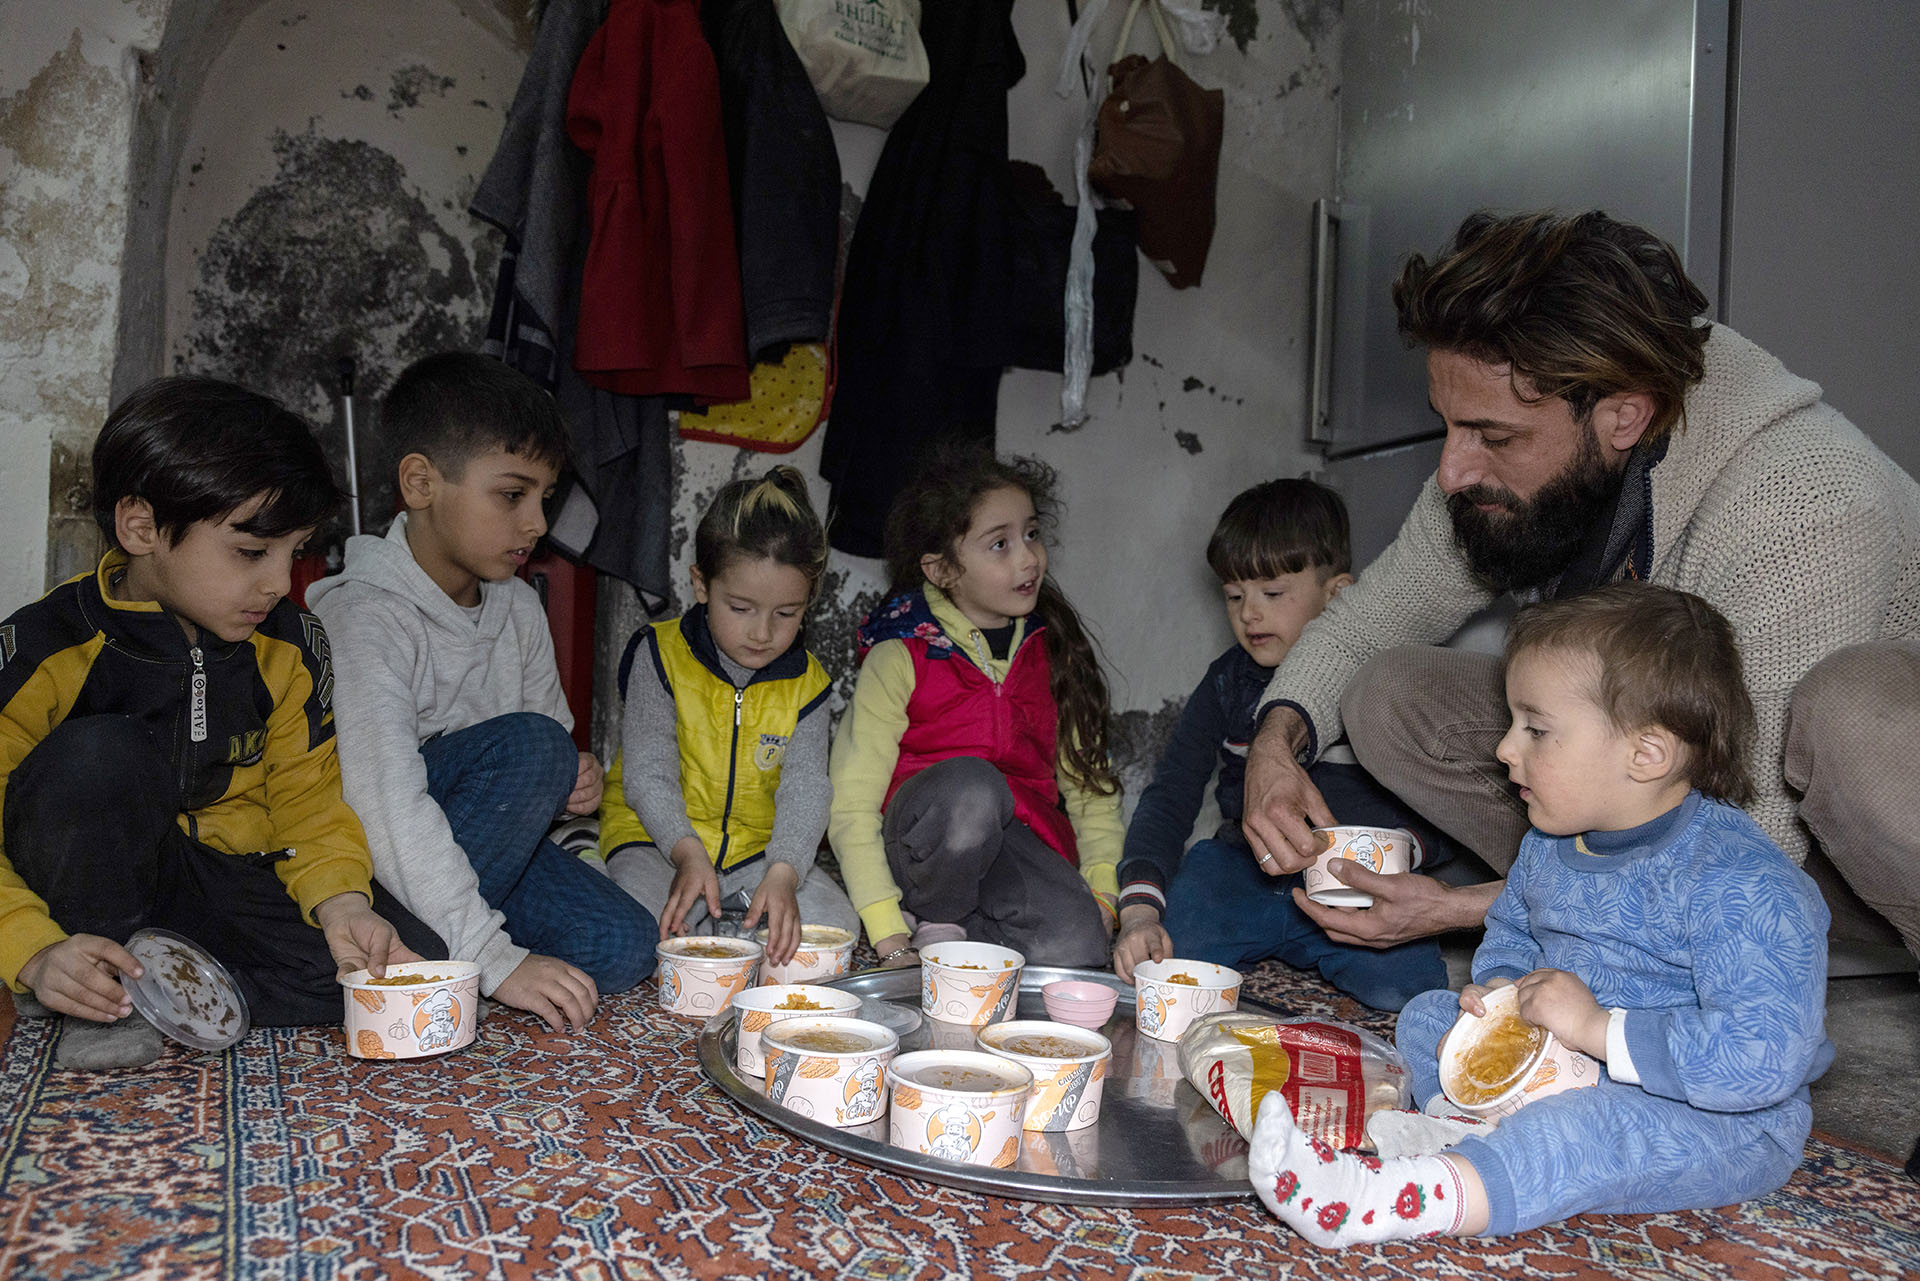 Ali AlHassan und seine Familie konnten nach dem Erdbeben in der Türkei in die sichere Stadt Mardin flüchten und eine Unterkunft finden. Eine von der Welthungerhilfe geförderte Suppenküche versorgt sie täglich mit Mahlzeiten.